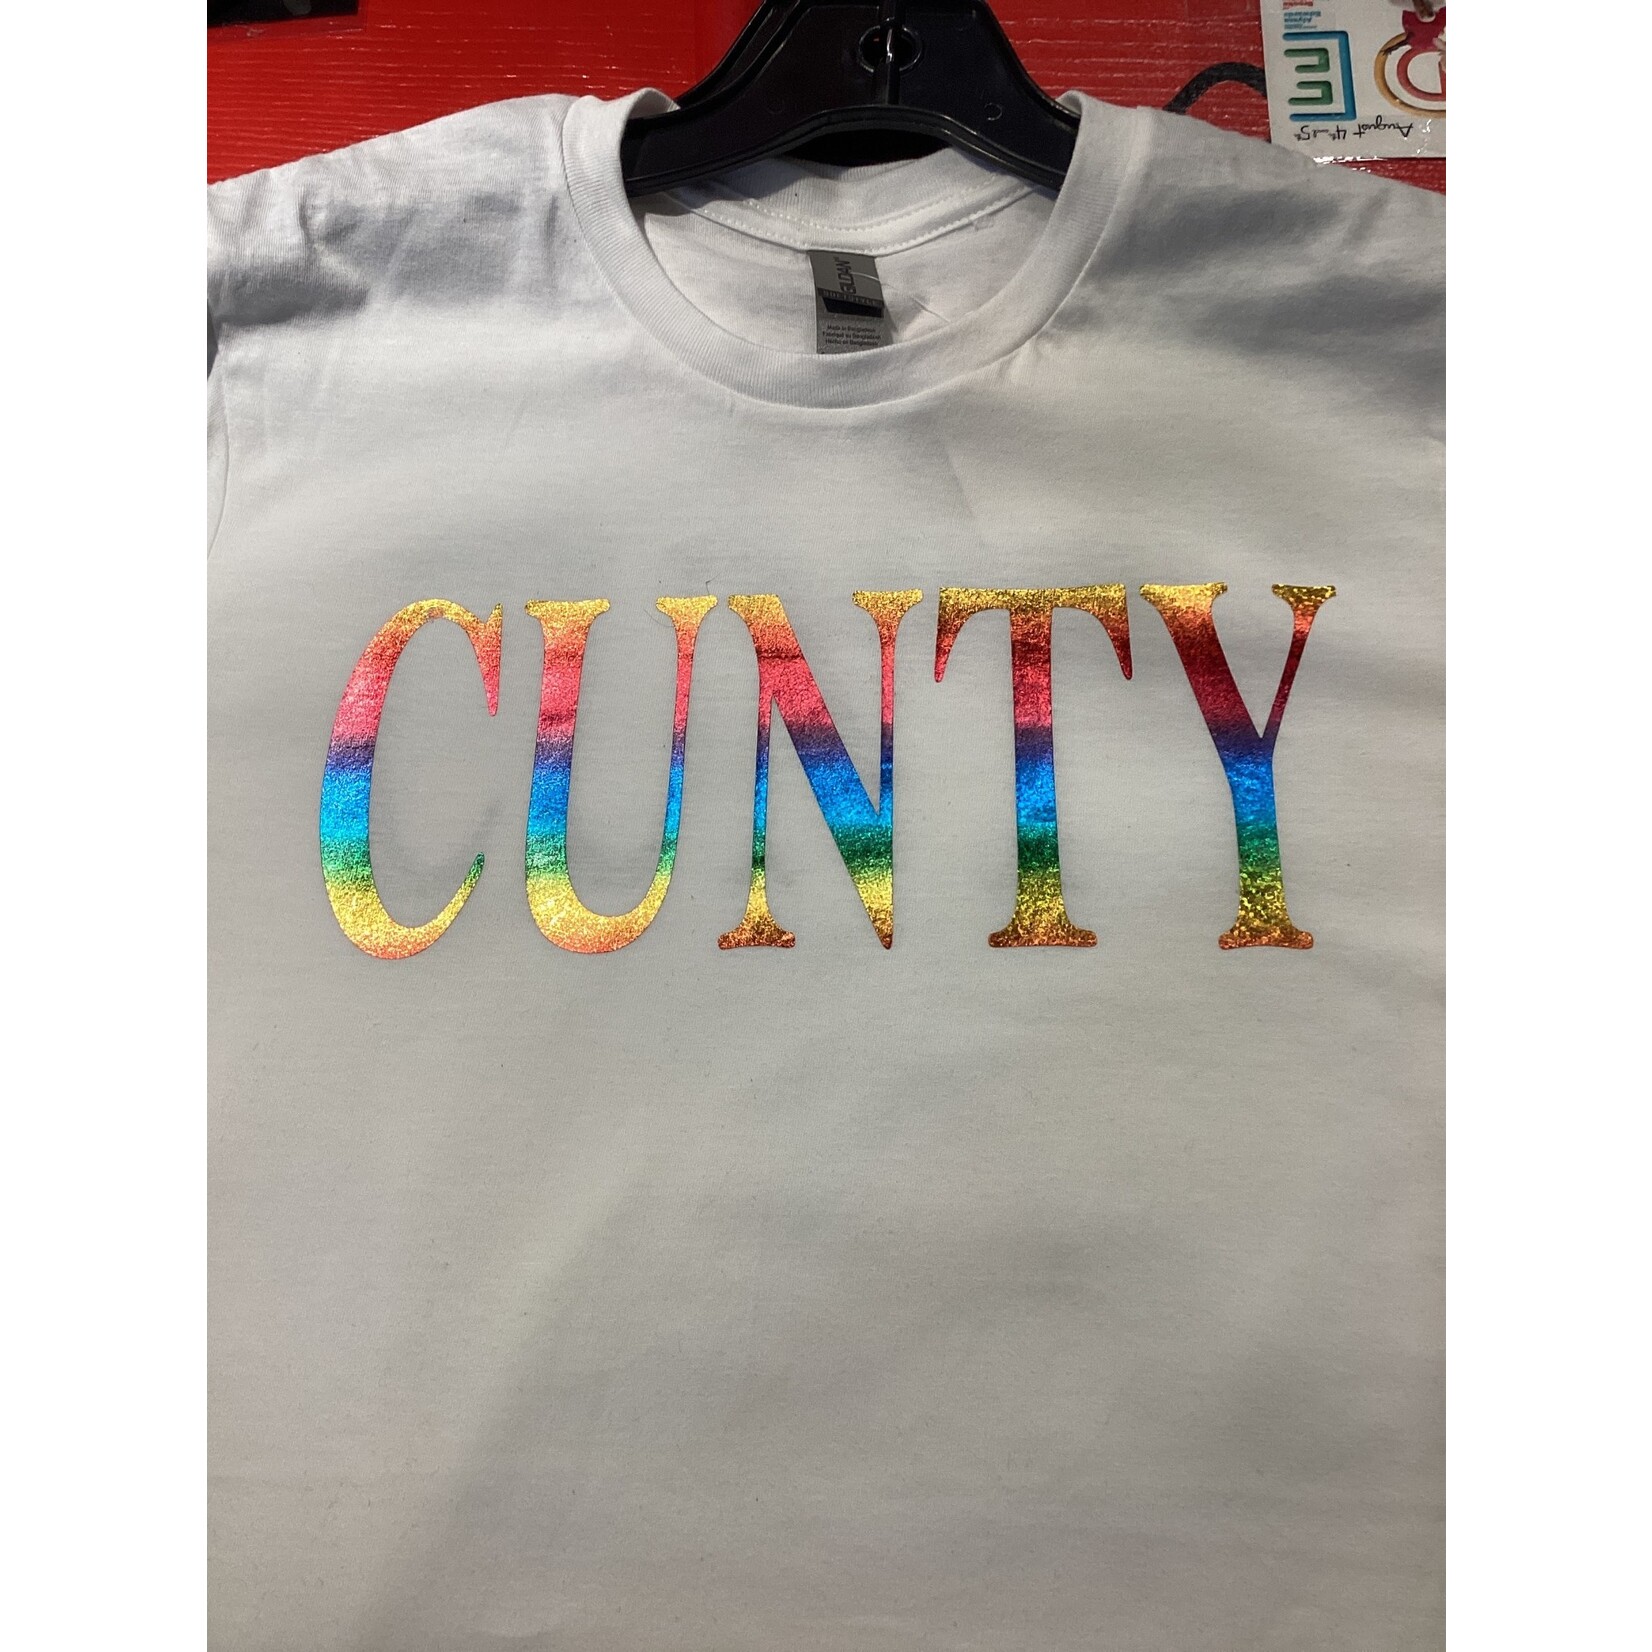 Jax Hammer Custom Jax Hammer Shirt “Cunty” White Shirt w/ Rainbow Vinyl